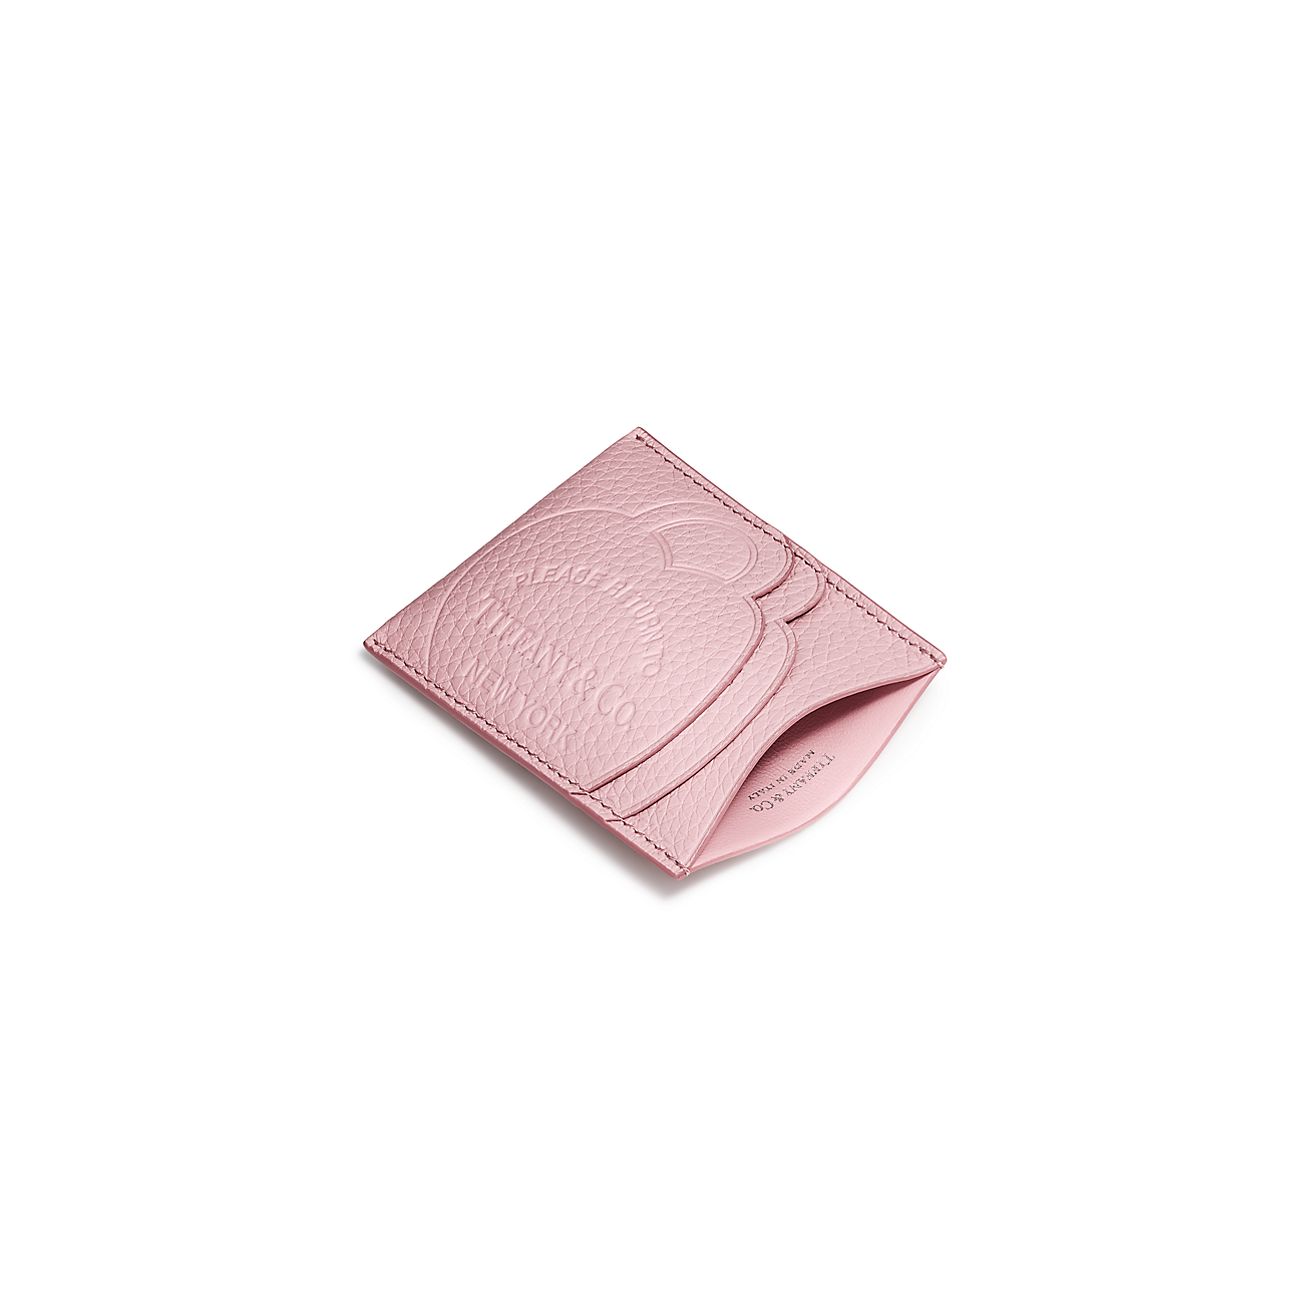 Card holder - Pink leather card holder